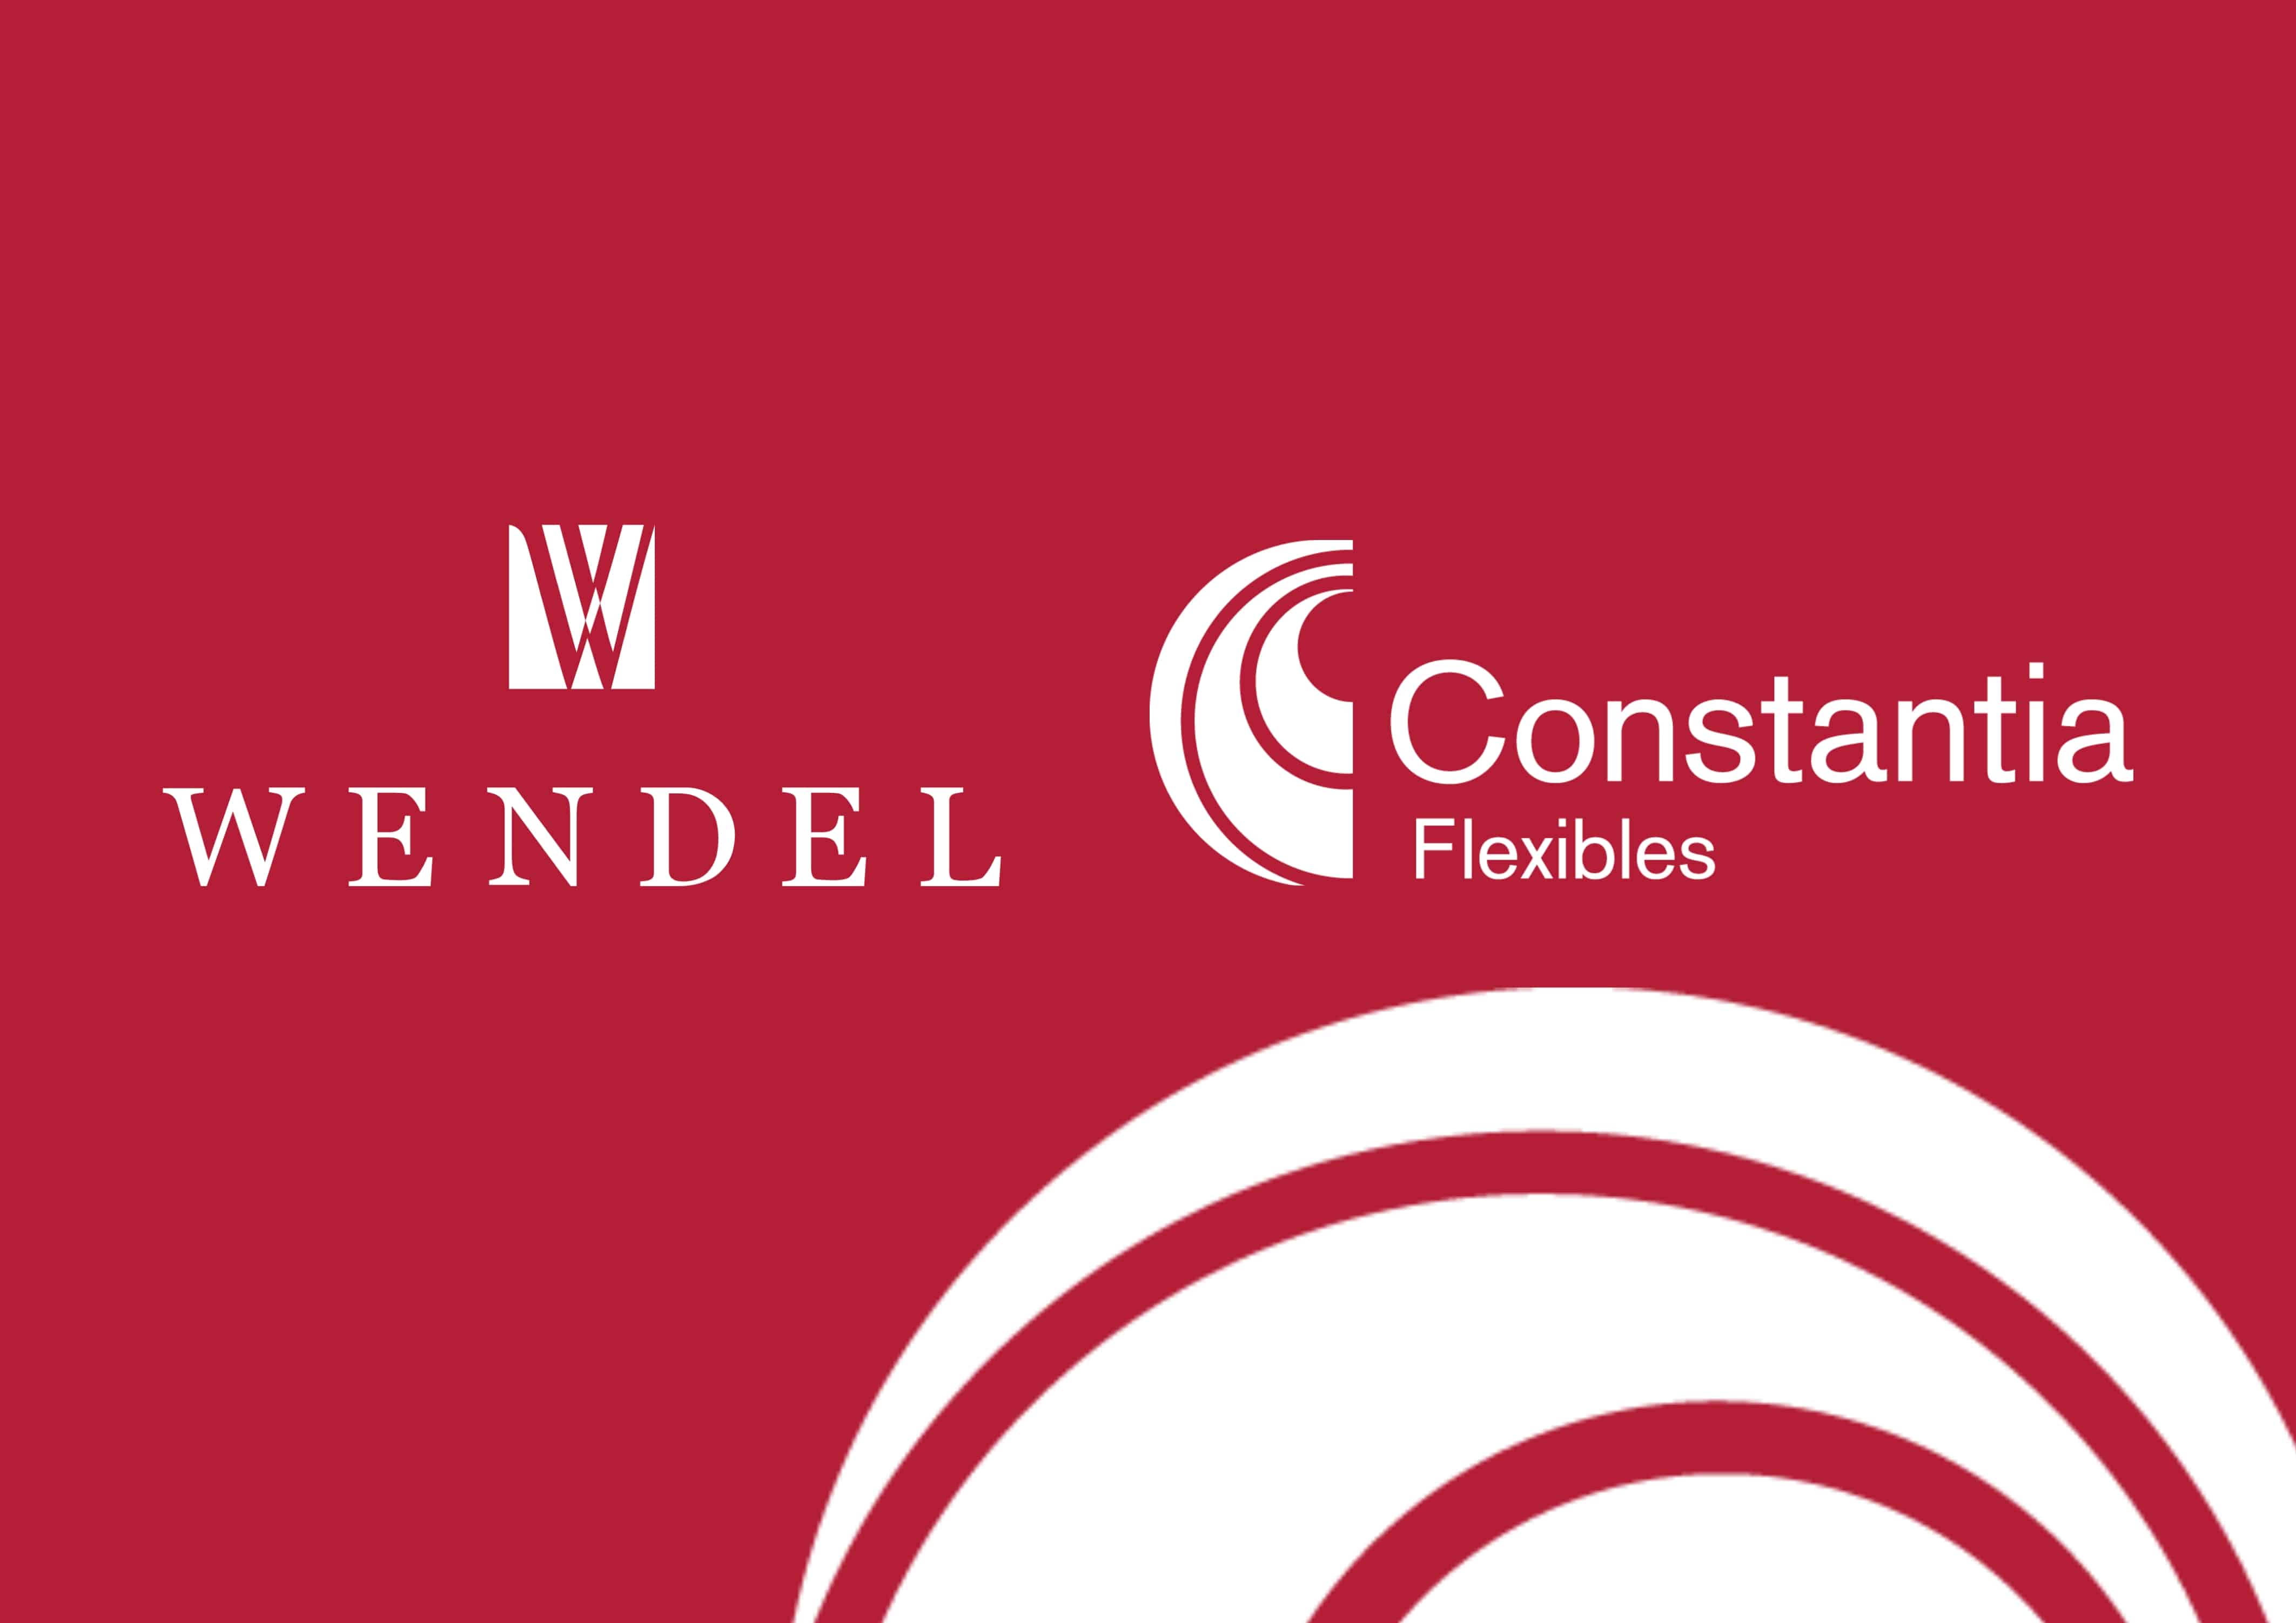 Wendel beabsichtigt den Verkauf von Constantia Flexibles